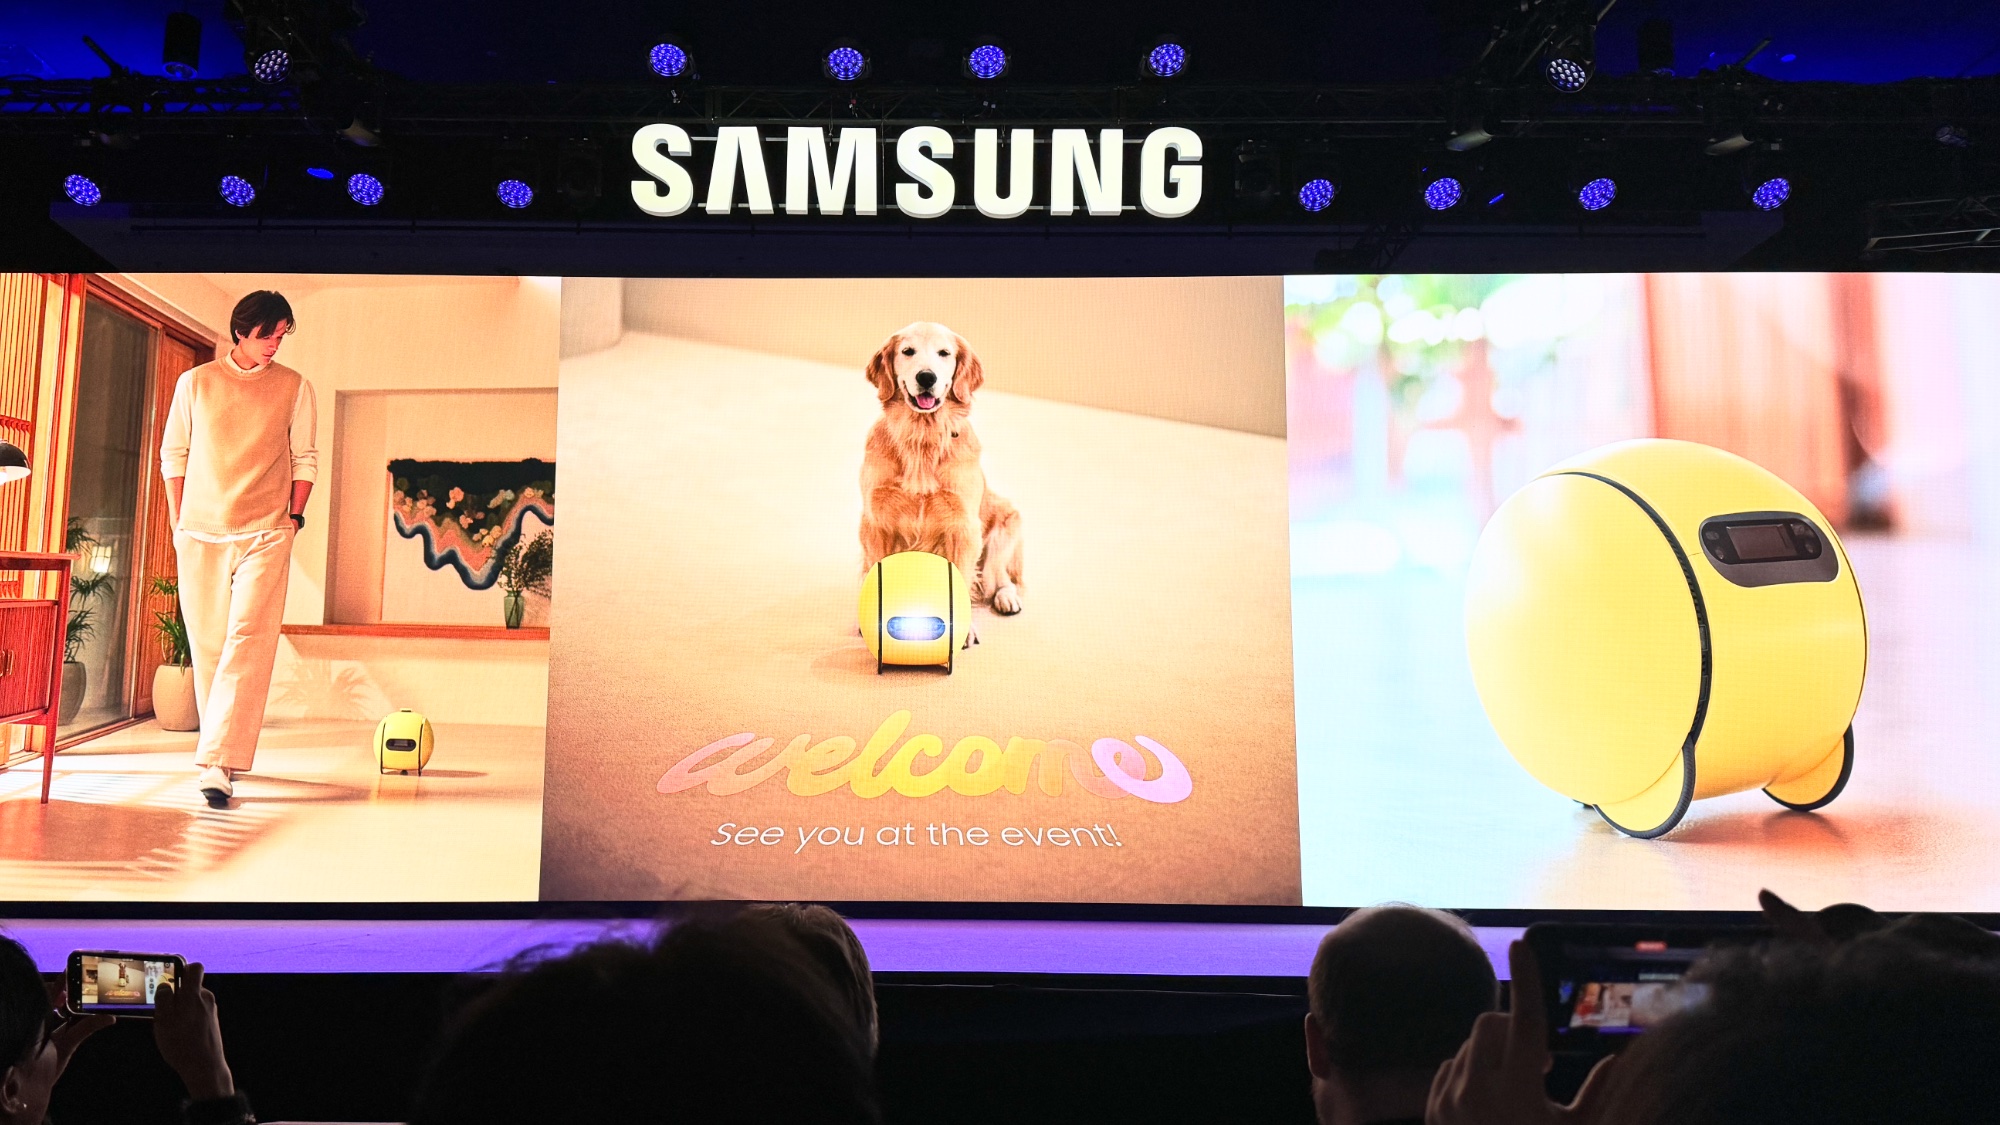 Samsung Ballie features